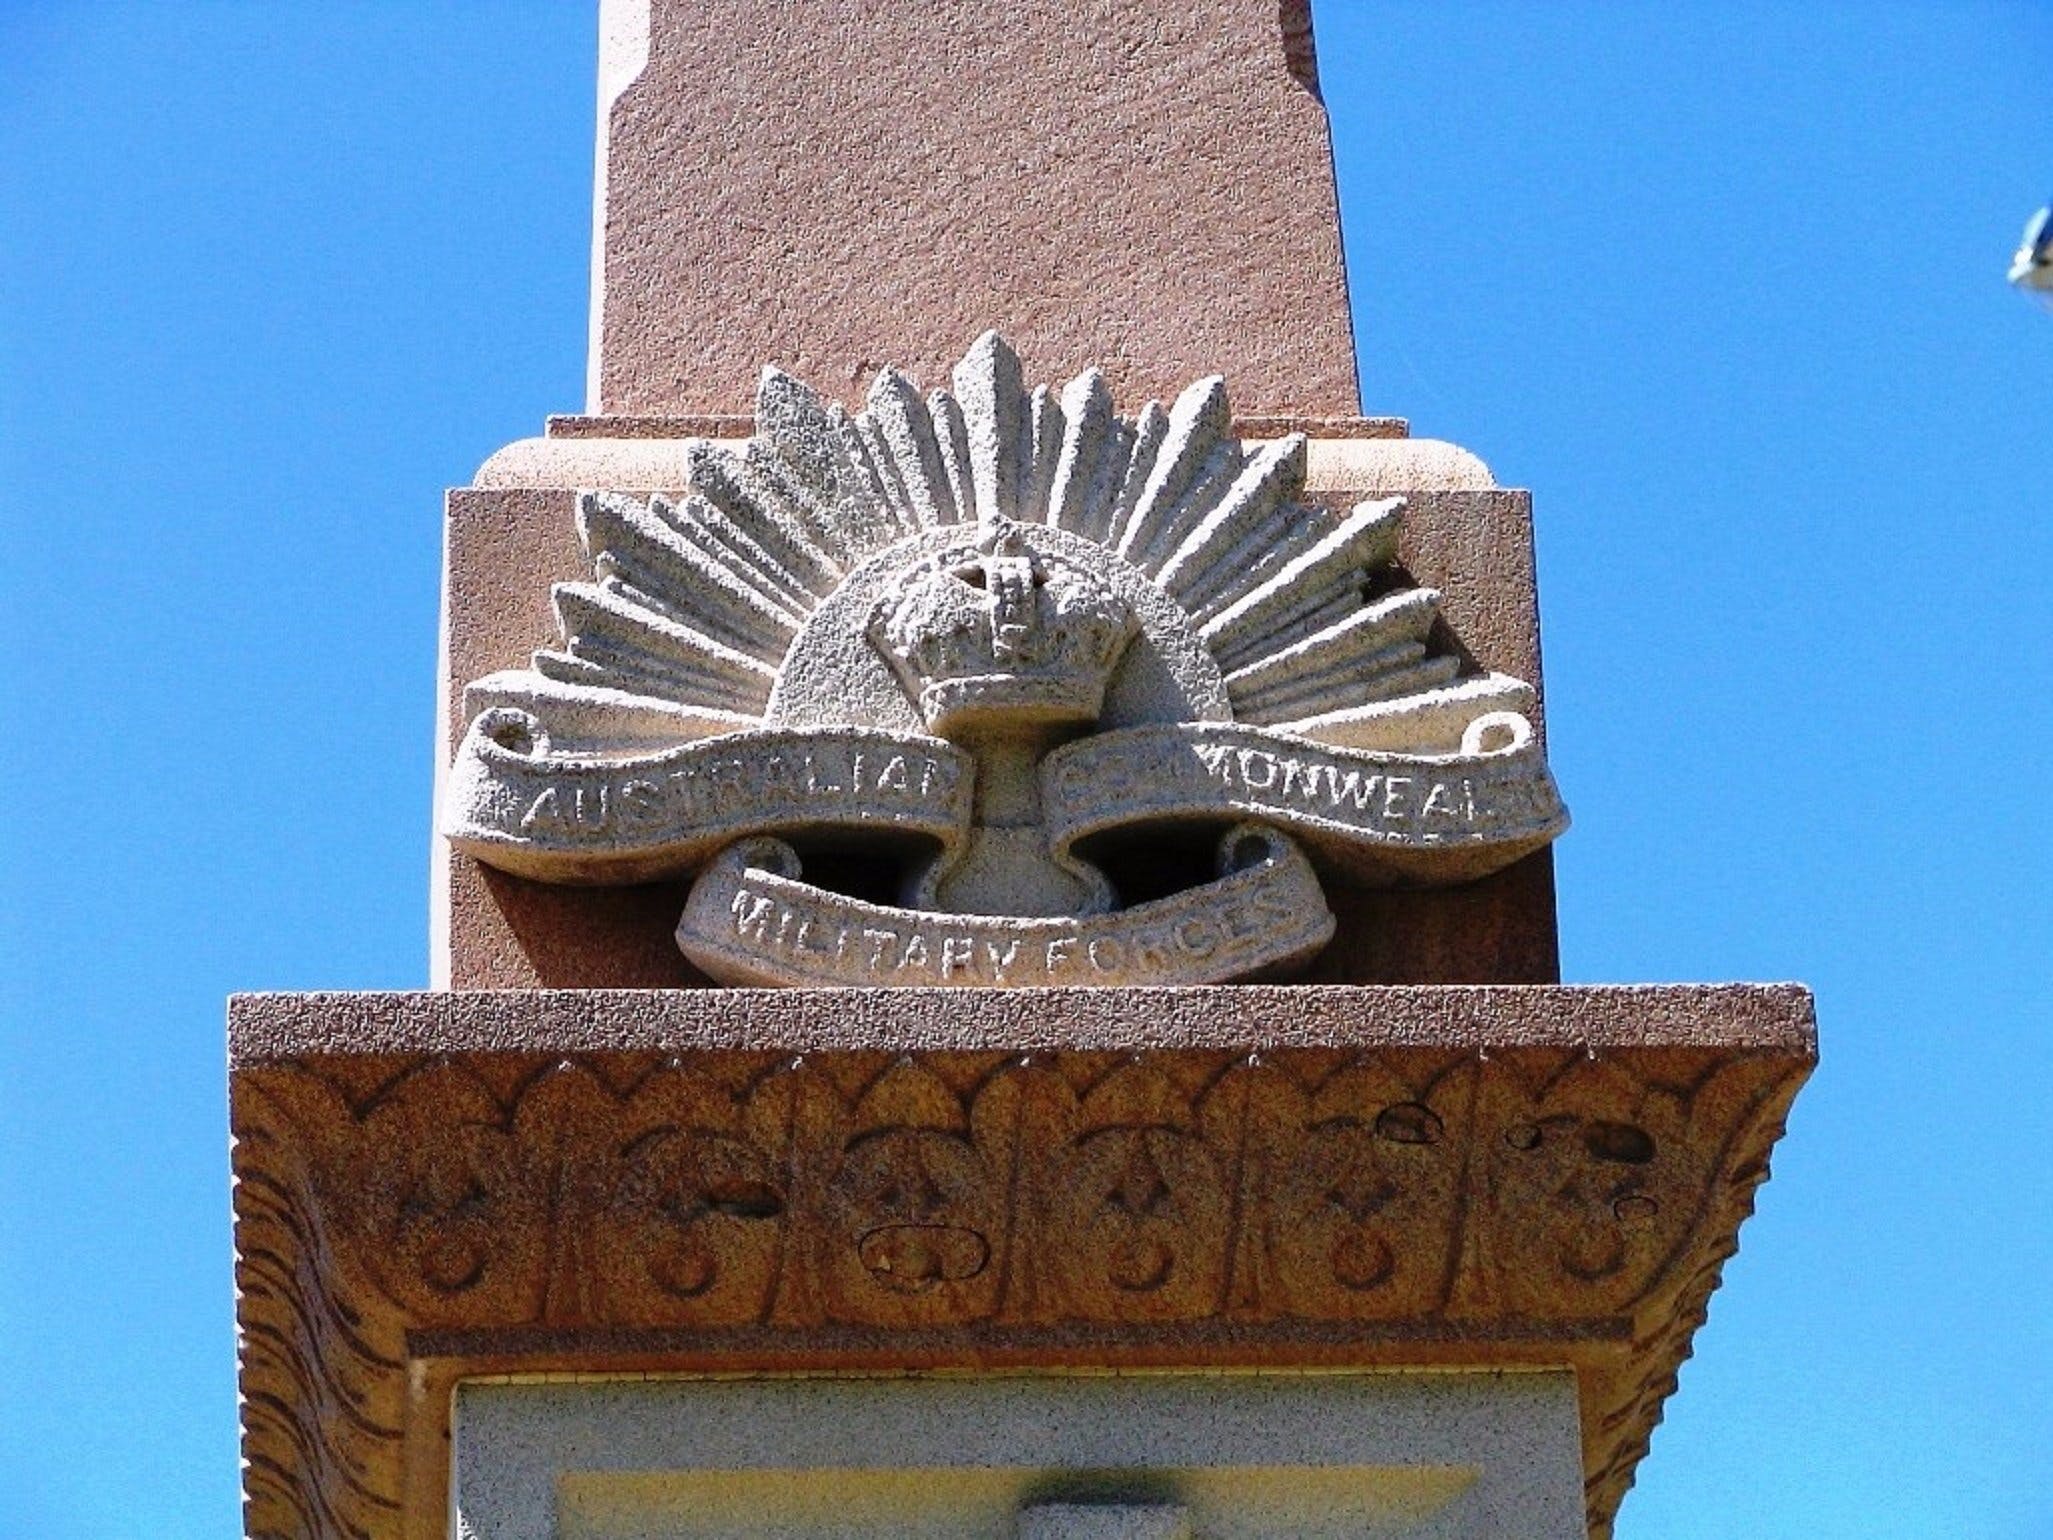 Boer War Memorial And Park, Allora - thumb 1